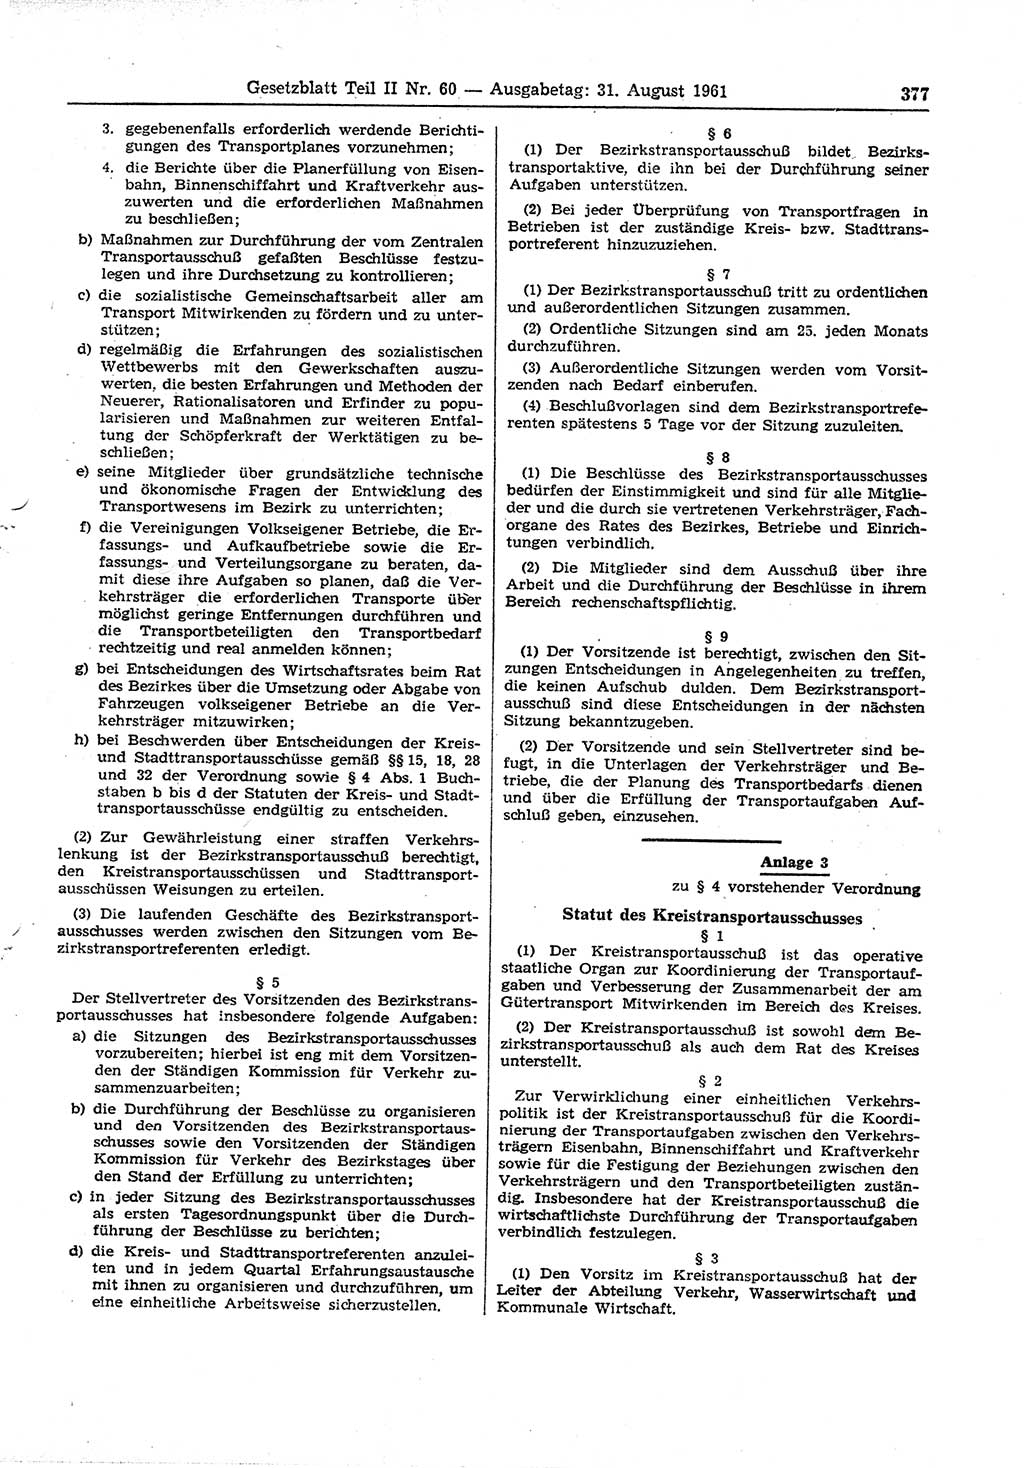 Gesetzblatt (GBl.) der Deutschen Demokratischen Republik (DDR) Teil ⅠⅠ 1961, Seite 377 (GBl. DDR ⅠⅠ 1961, S. 377)